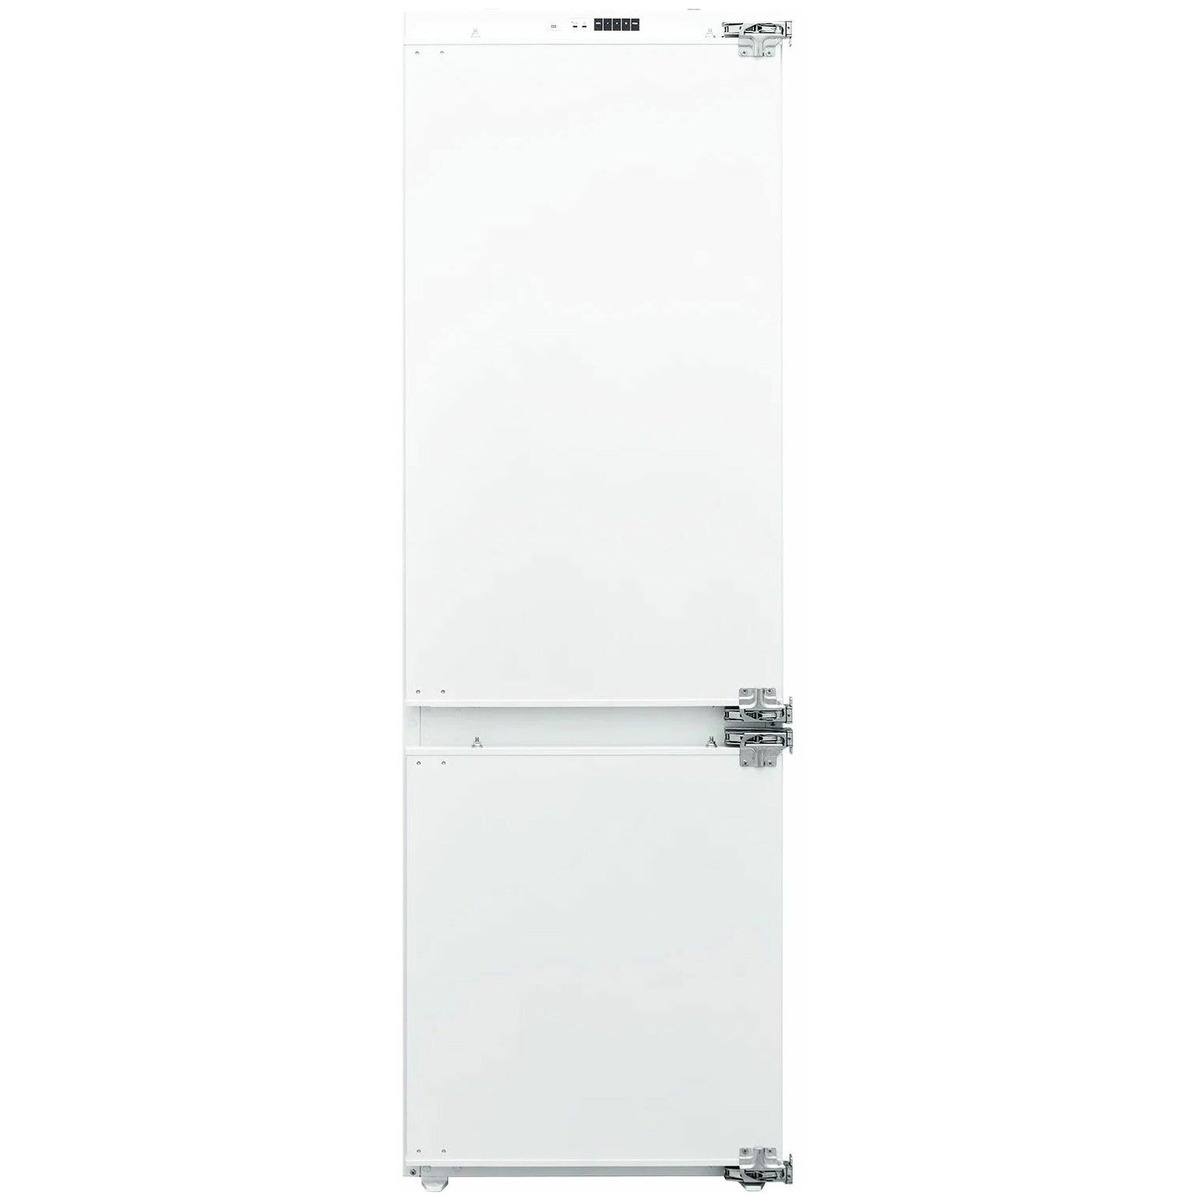 Холодильник DELVENTO VBW36400 (Цвет: White)